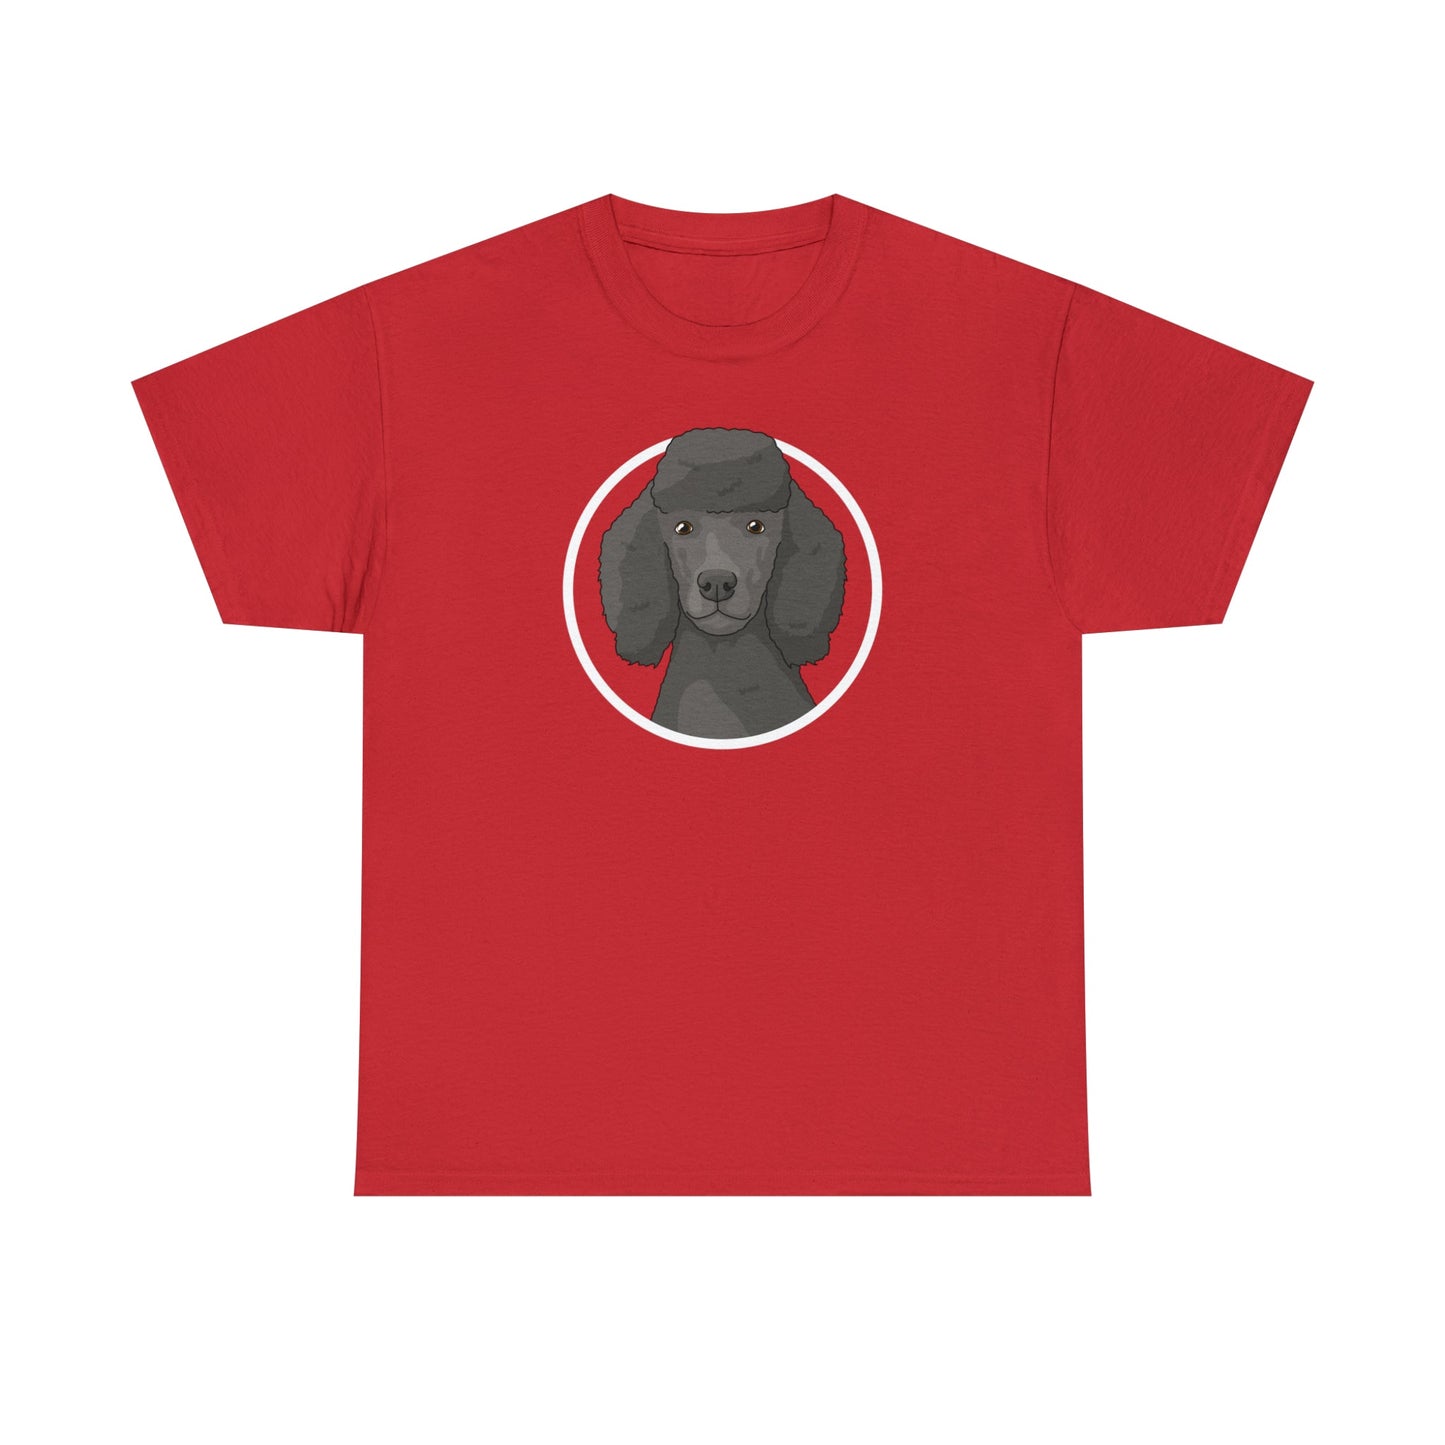 Poodle Circle | T-shirt - Detezi Designs-30577863242005635127